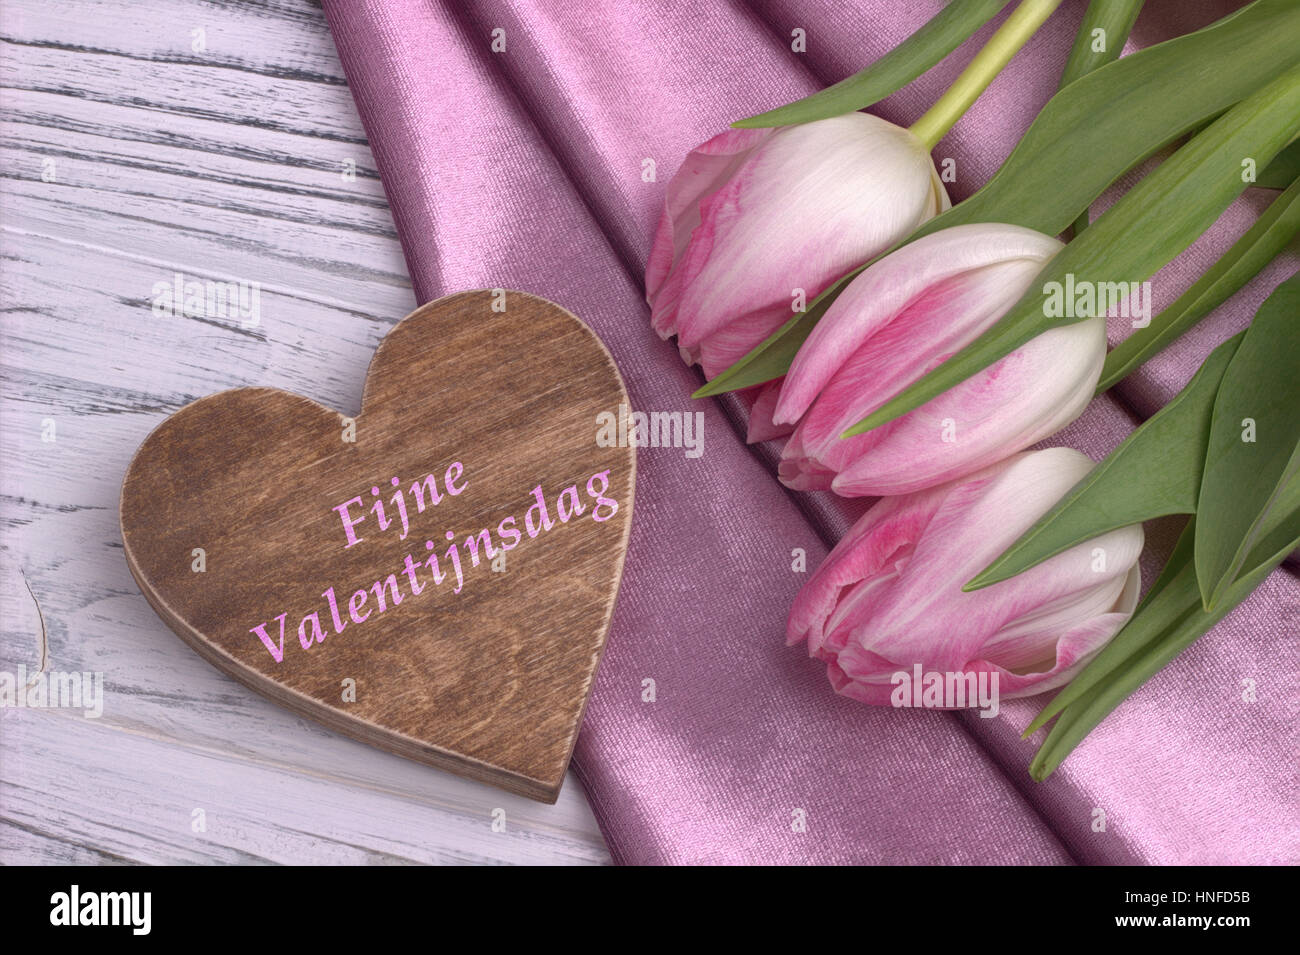 La Saint-Valentin avec la vie toujours élégante tulip rose fleurs rose tissu brillant en forme de coeur et signe sur fond en bois blanc et le lettrage heureux Valen Banque D'Images